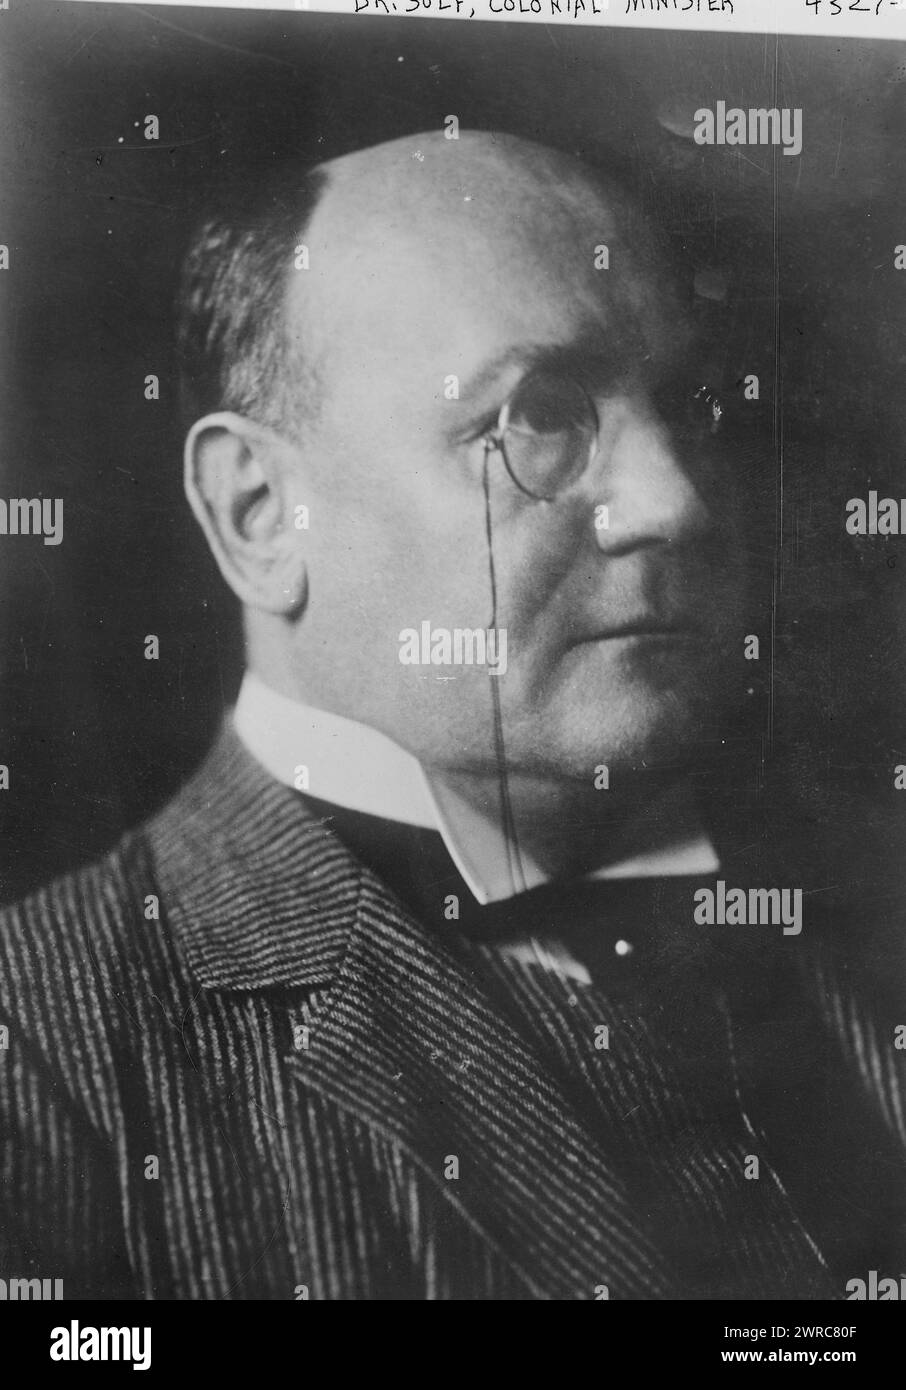 Dr Solf, ministre des colonies, photographie montre l'homme d'État allemand Wilhelm Heinrich Solf (1862-1936) qui a servi comme gouverneur du Samoa et secrétaire du Bureau des colonies allemandes., 1927 février 17, négatifs en verre, 1 négatif : verre Banque D'Images